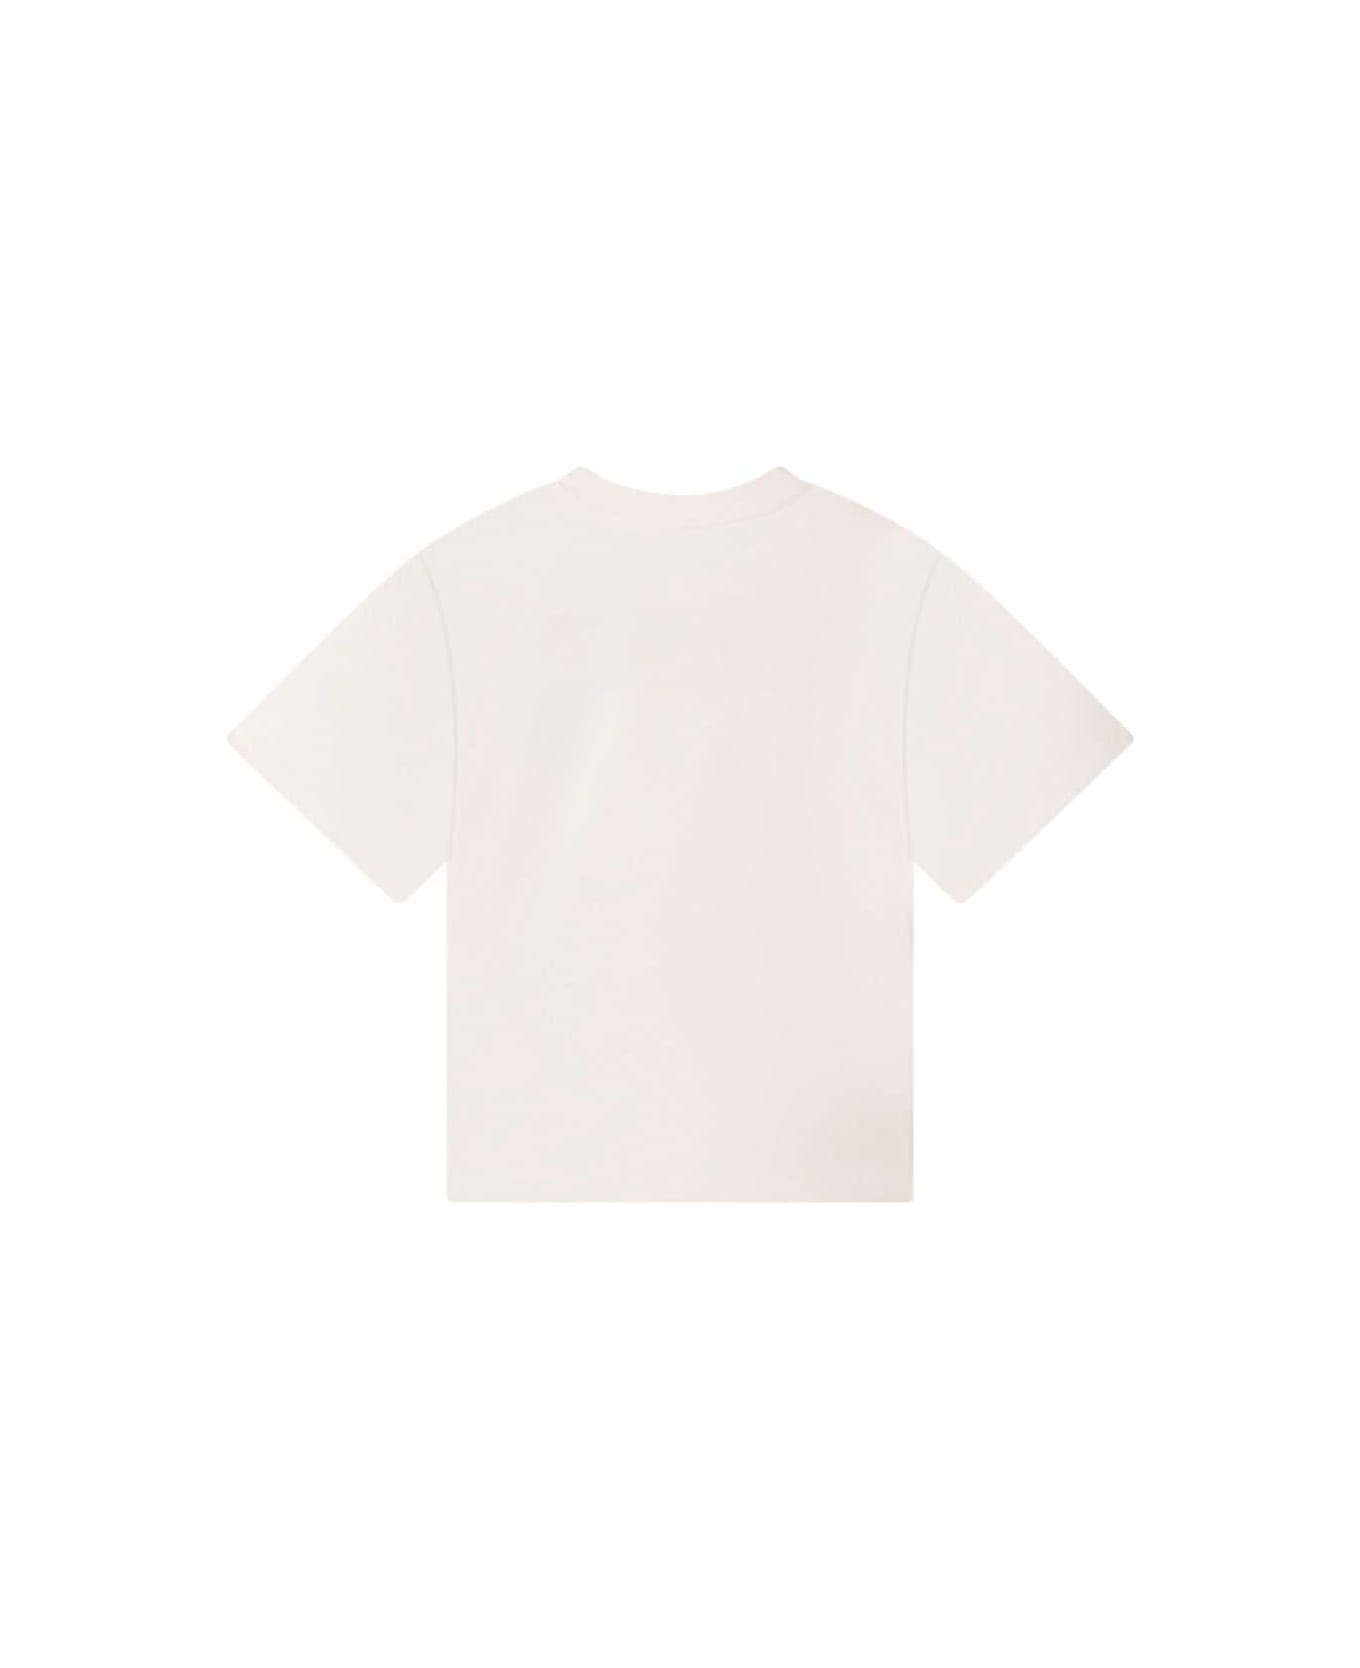 Kenzo Kids Kenzo T-shirt Bianca In Jersey Di Cotone Bambino - Bianco Tシャツ＆ポロシャツ